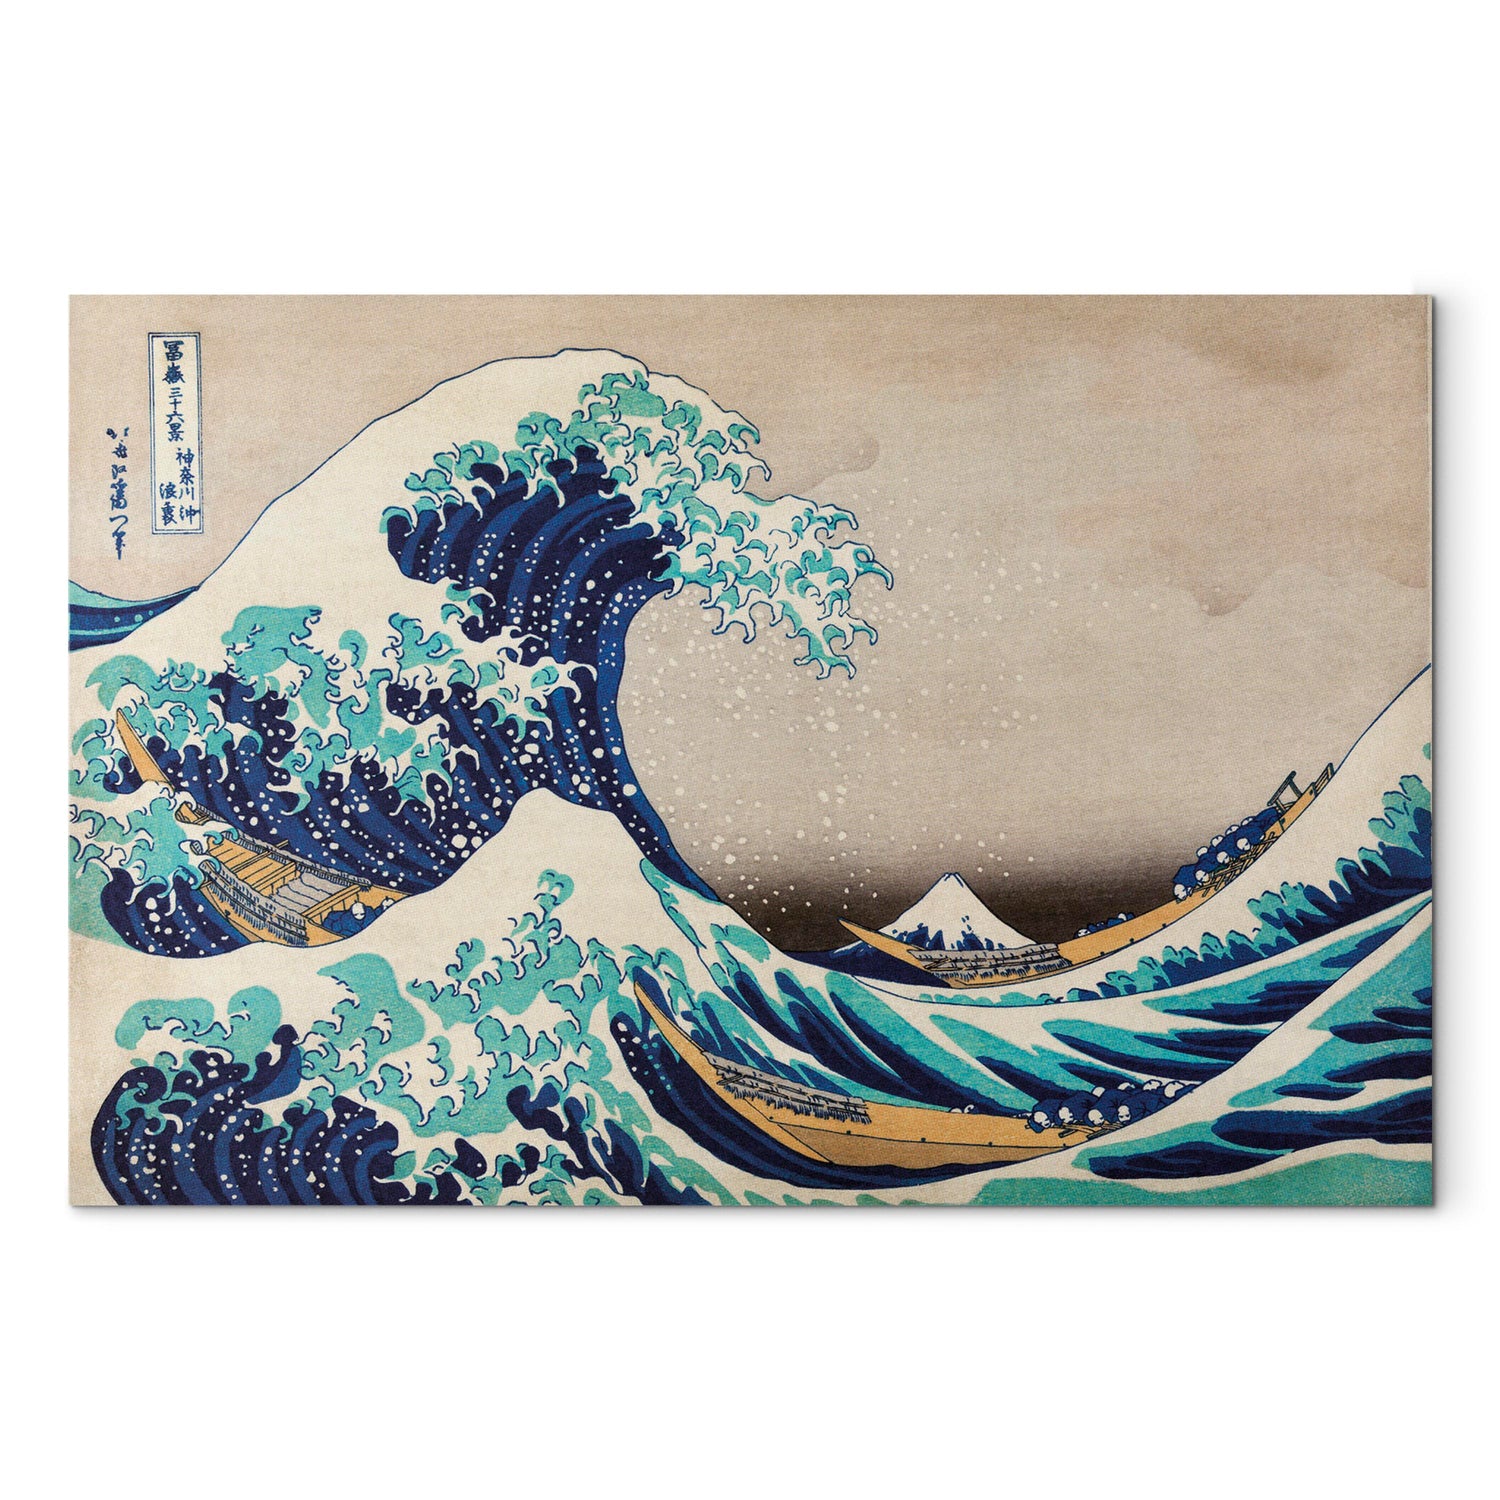 Reproduction Canvas Wall Art - The Great Wave off Kanagawa